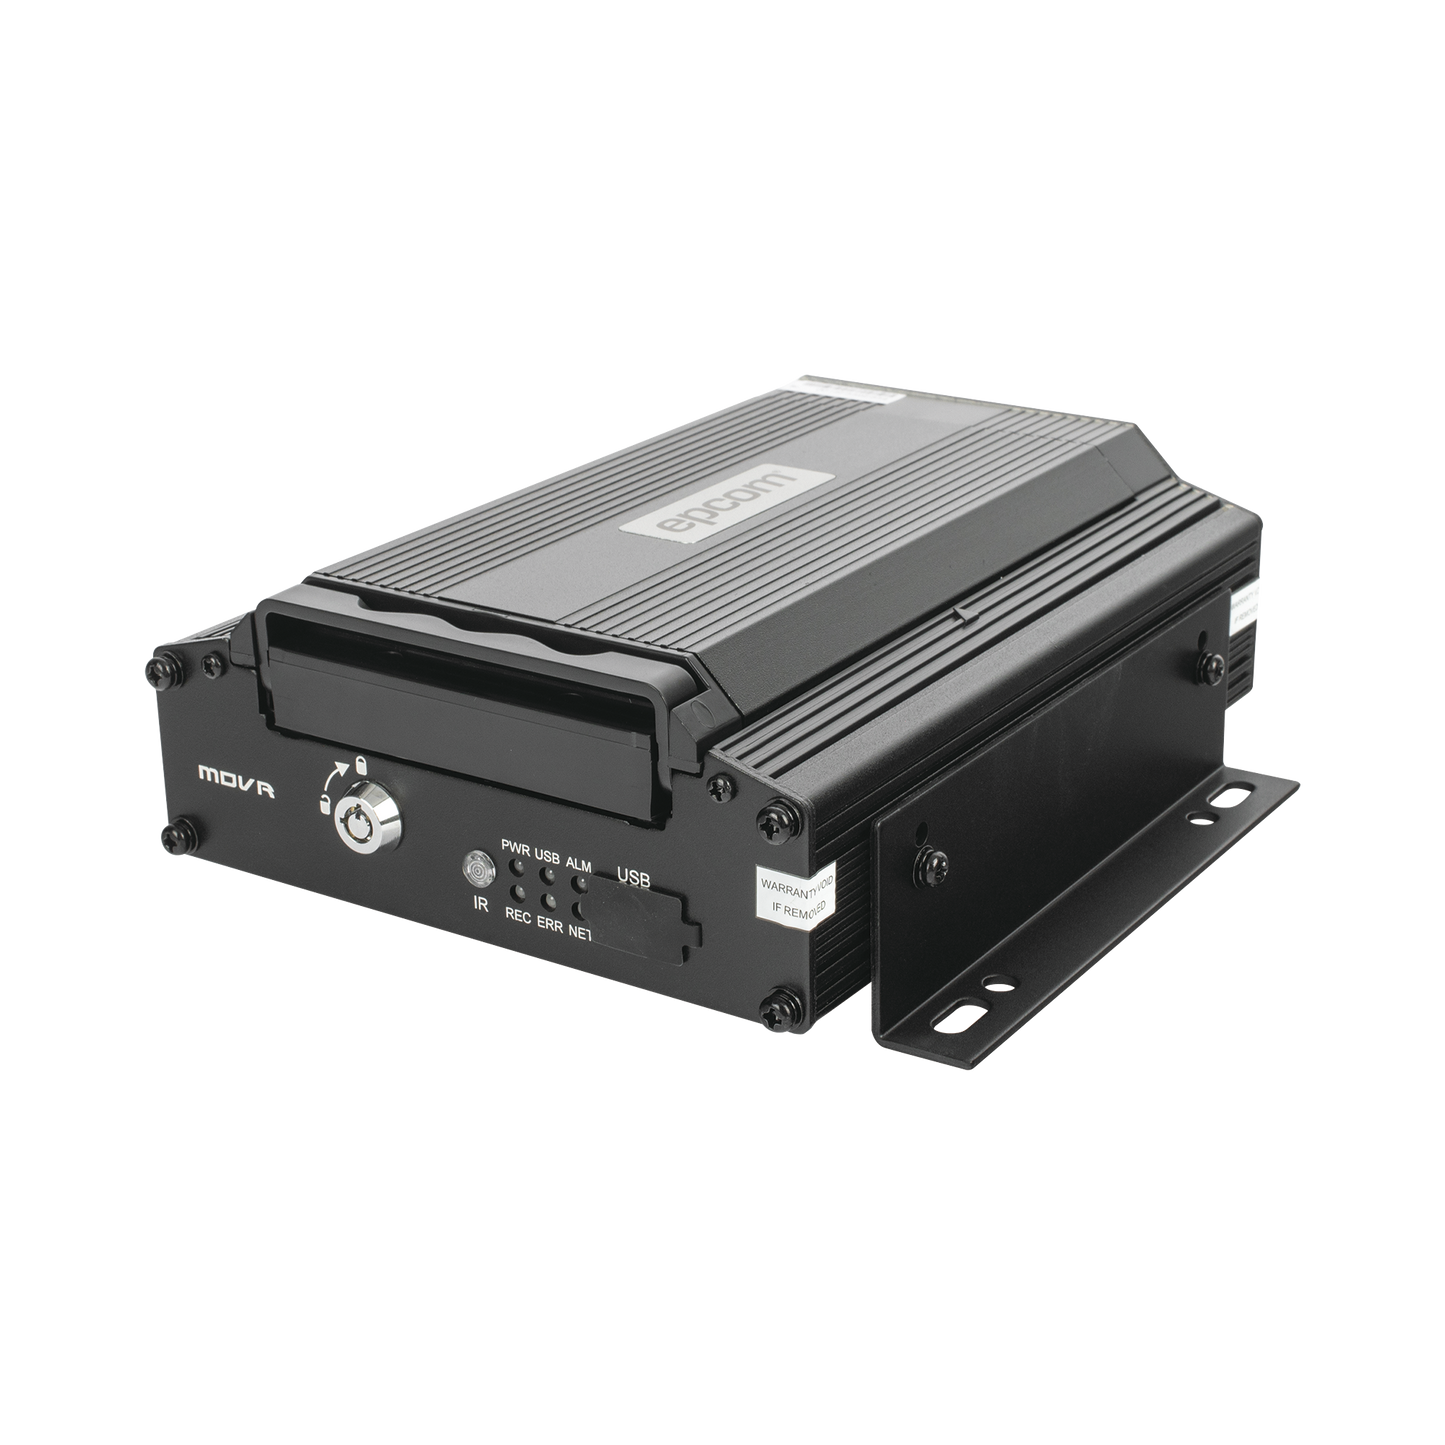 NUBE EPCOMGPS / DVR Móvil / 4 Canales AHD 2 Megapixel / Almacenamiento en HDD / H.265 / Chip IA Embebido / Soporta 4G / WiFi / GPS